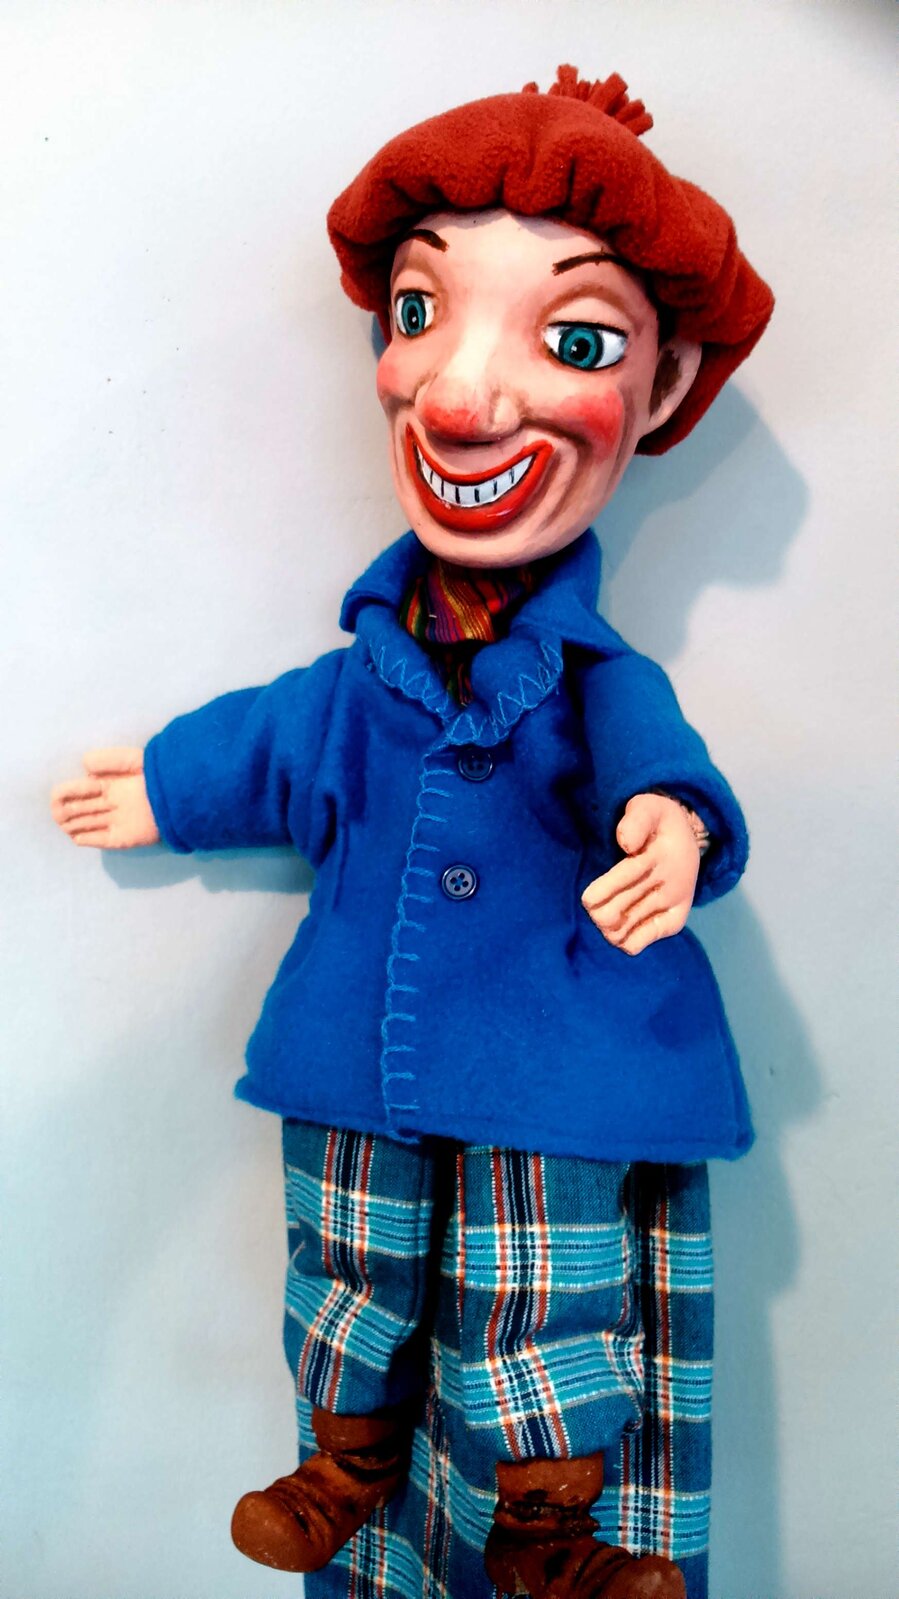 Ilustracja przedstawia uśmiechniętą pacynkę. Lalka to postać chłopca ubranego w niebieski płaszczyk oraz kraciaste spodnie. Na nogach ma brązowe trzewiki.